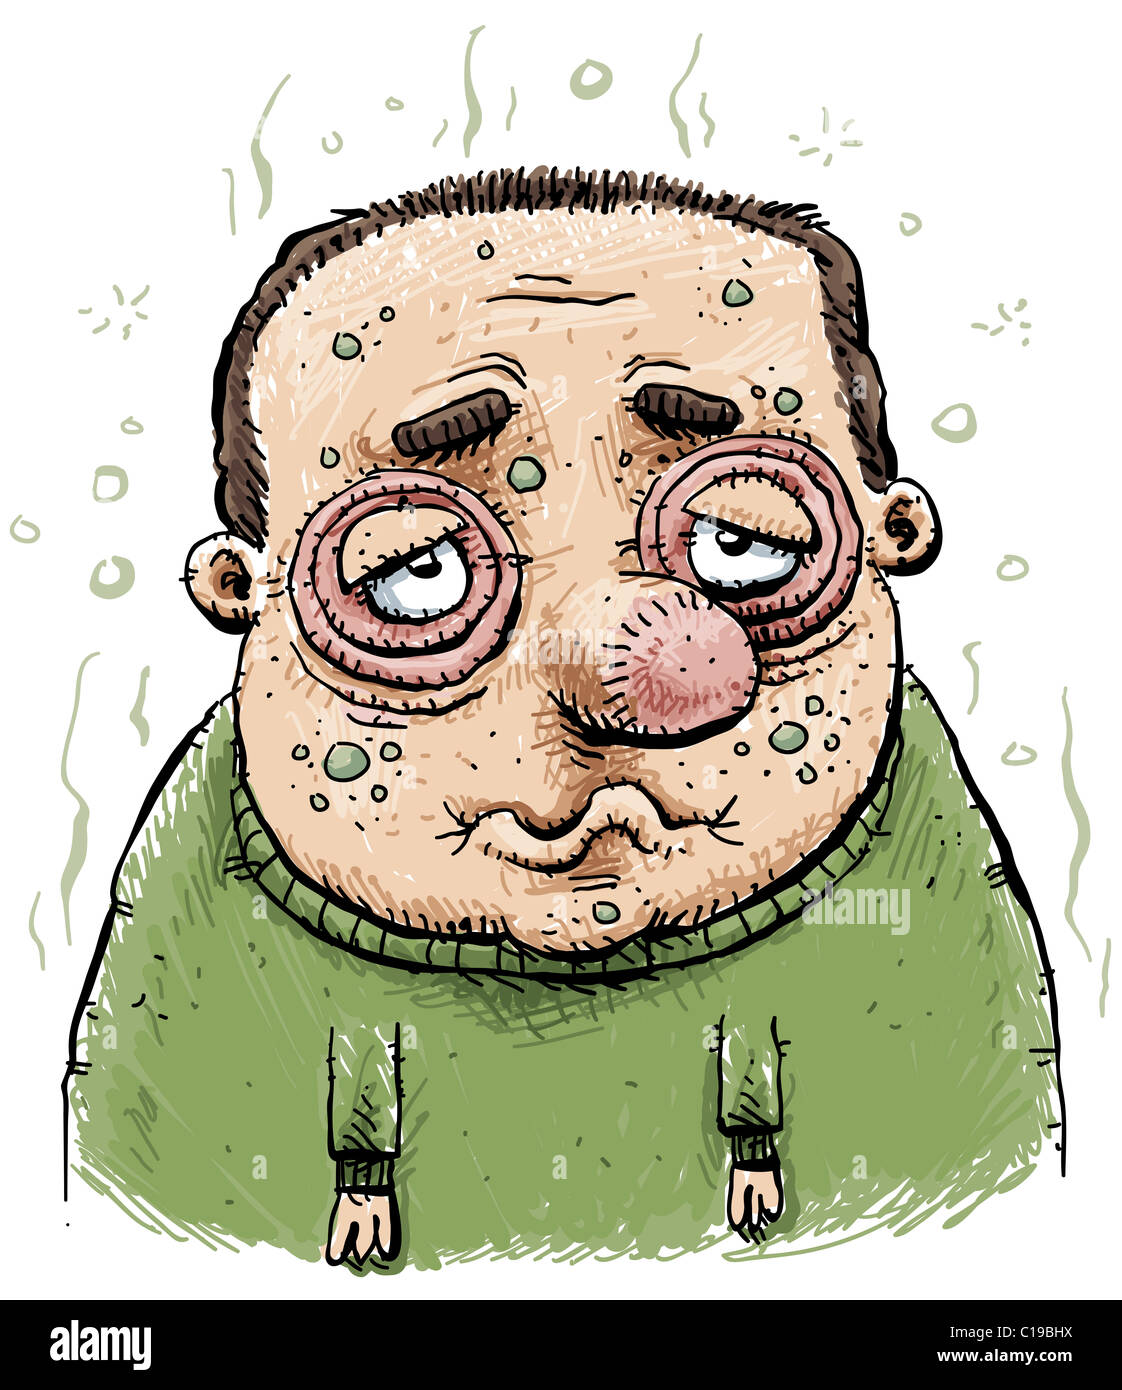 Cartoon of a sick man Stock Photo - Alamy